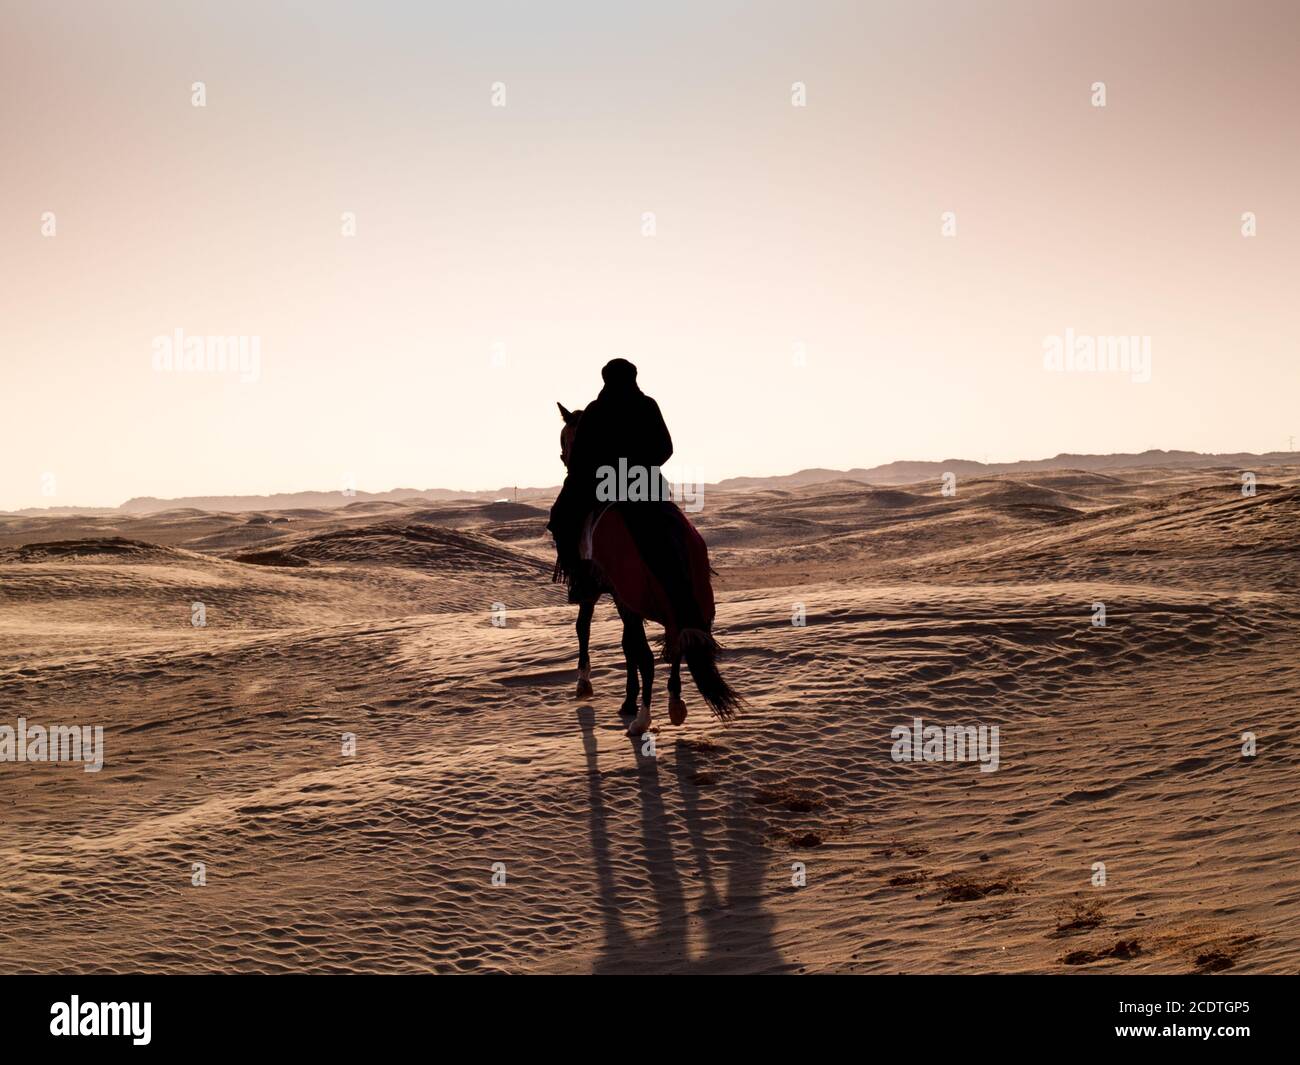 Douz, Tunisia, Arabian knight in the desert at sunset Stock Photo